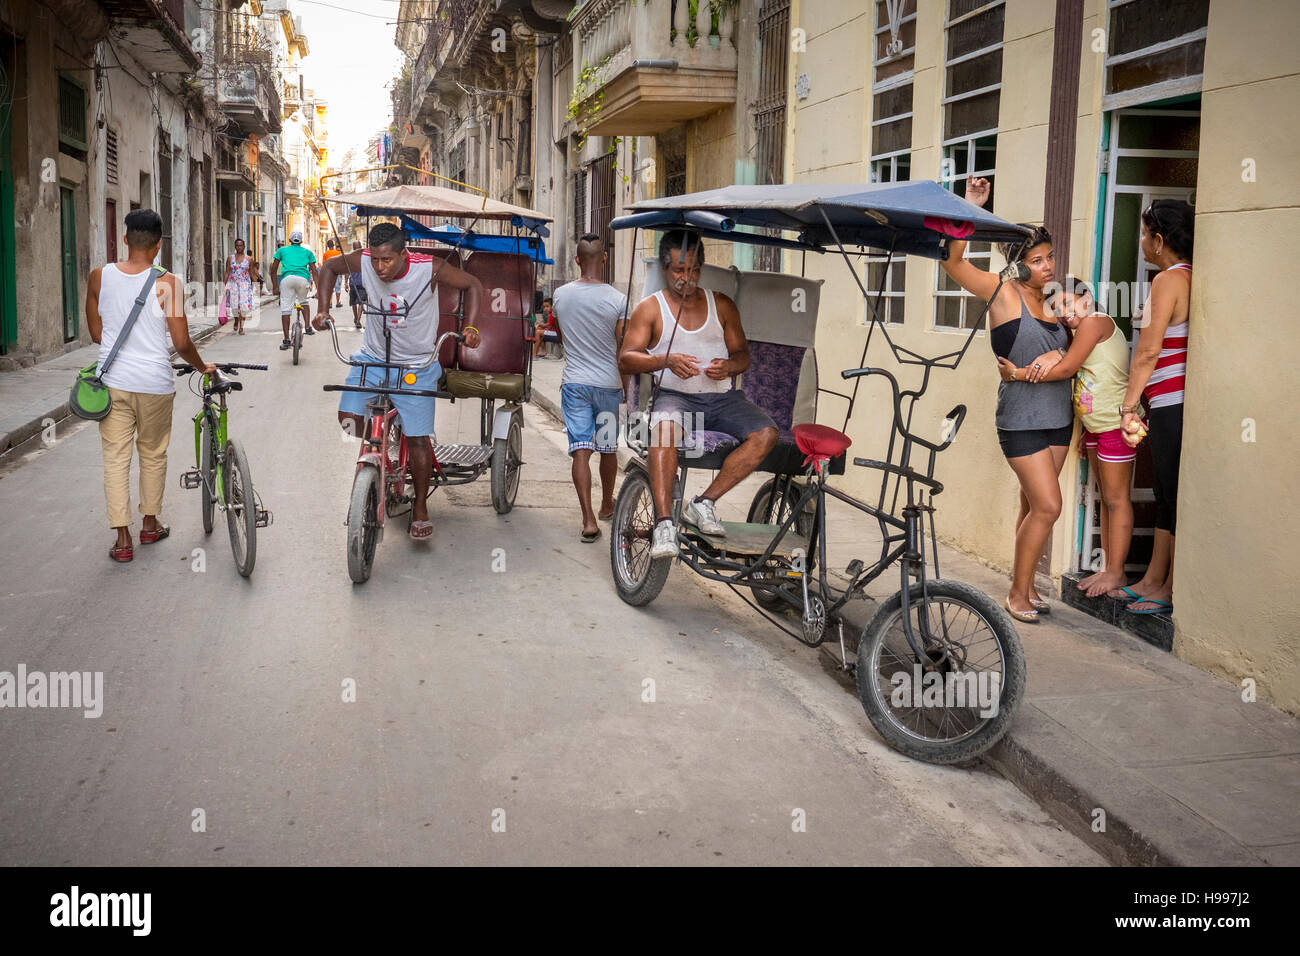 Havana, Cuba: Street scene in Old Havana Stock Photo